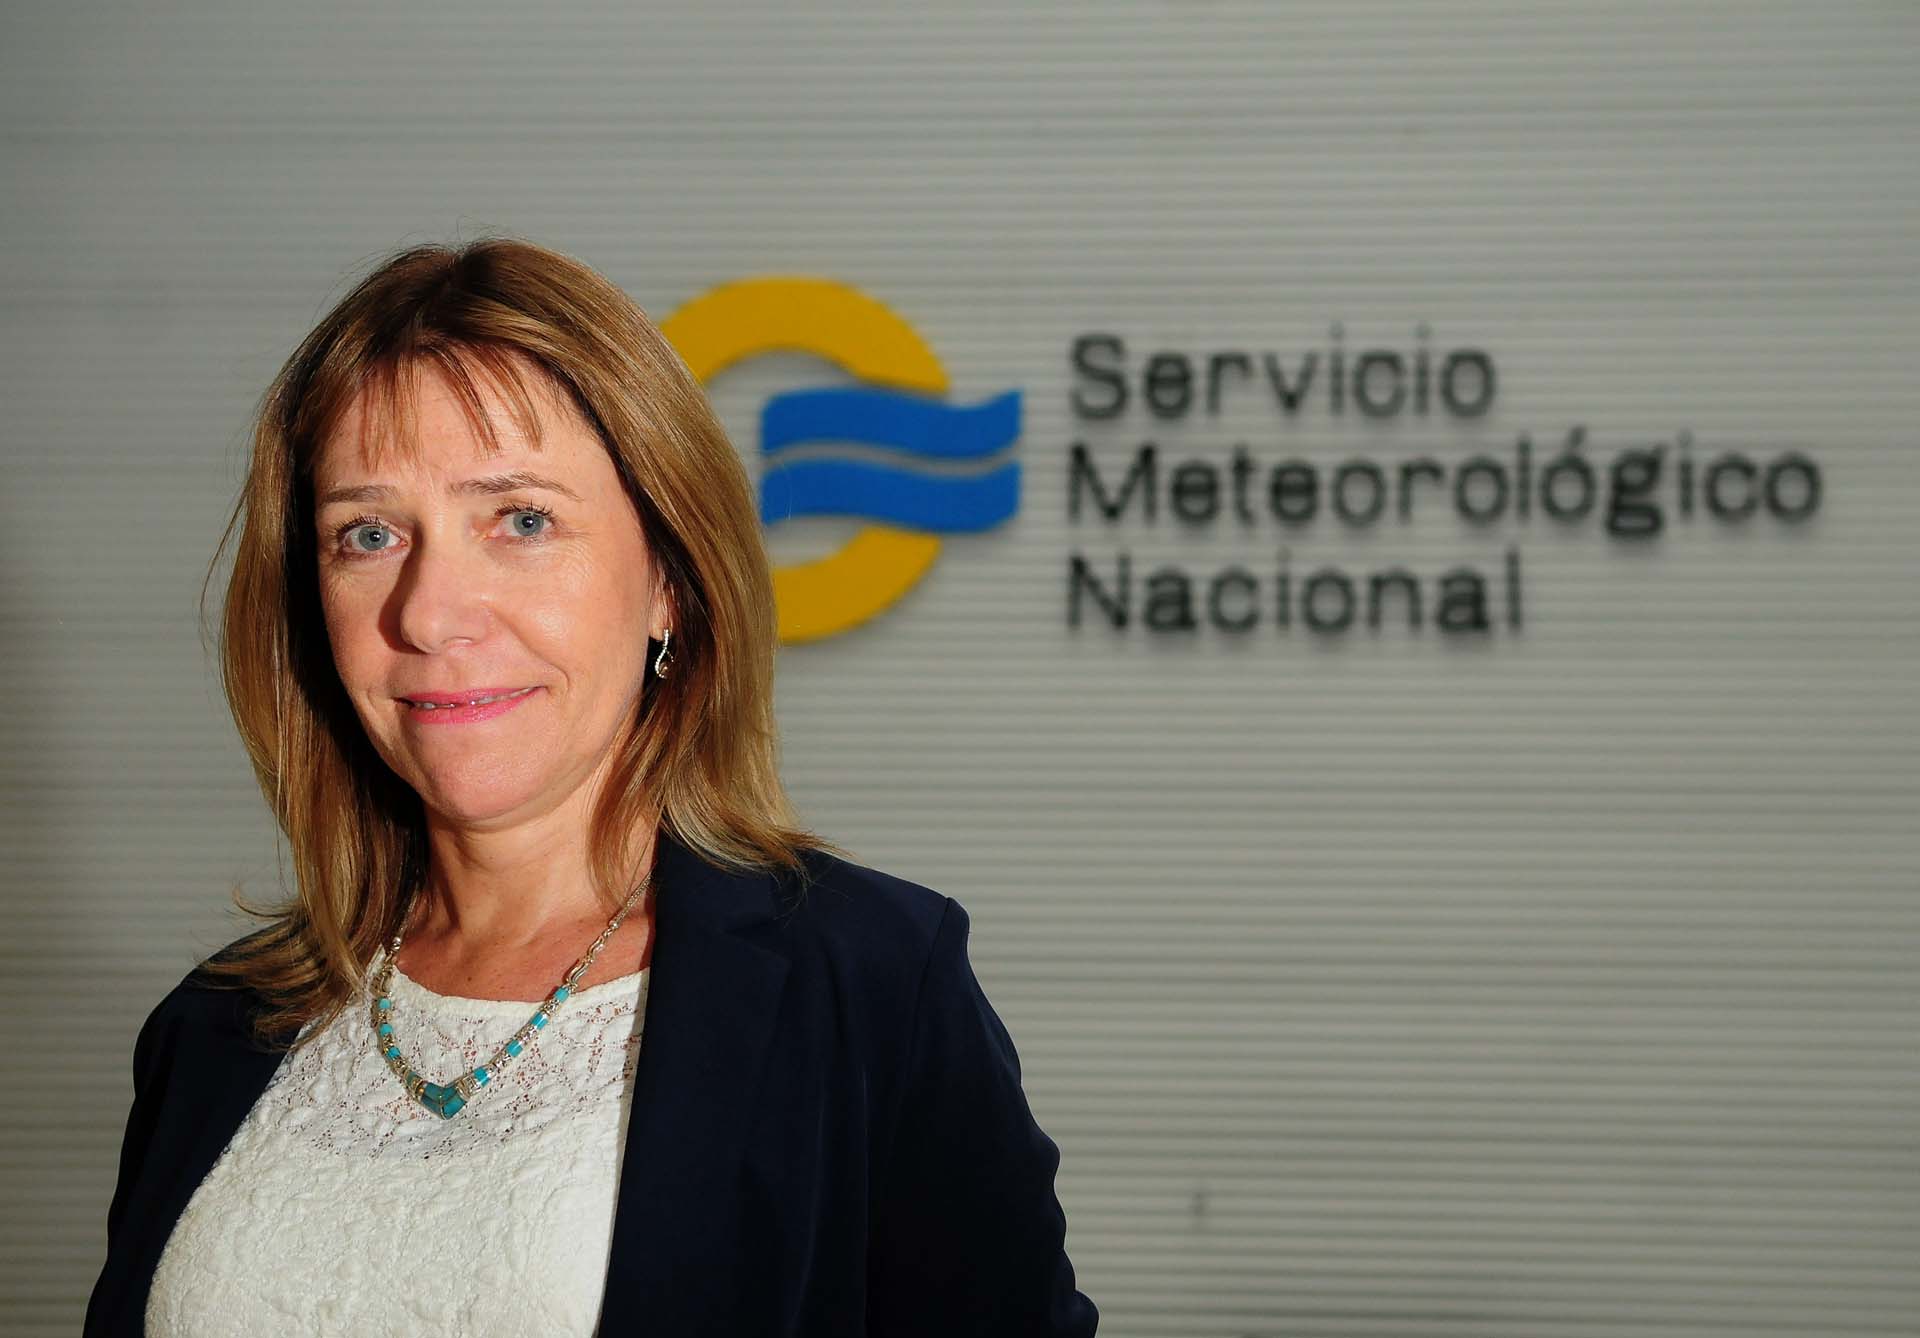 Como la primera directora del Servicio Meteorológico Nacional de la Argentina, la doctora Saulo se enfocó en la mejora de la vigilancia de los fenómenos meteorológicos, la calidad de las predicciones del tiempo y de las comunicaciones con la sociedad (Maximiliano Luna)